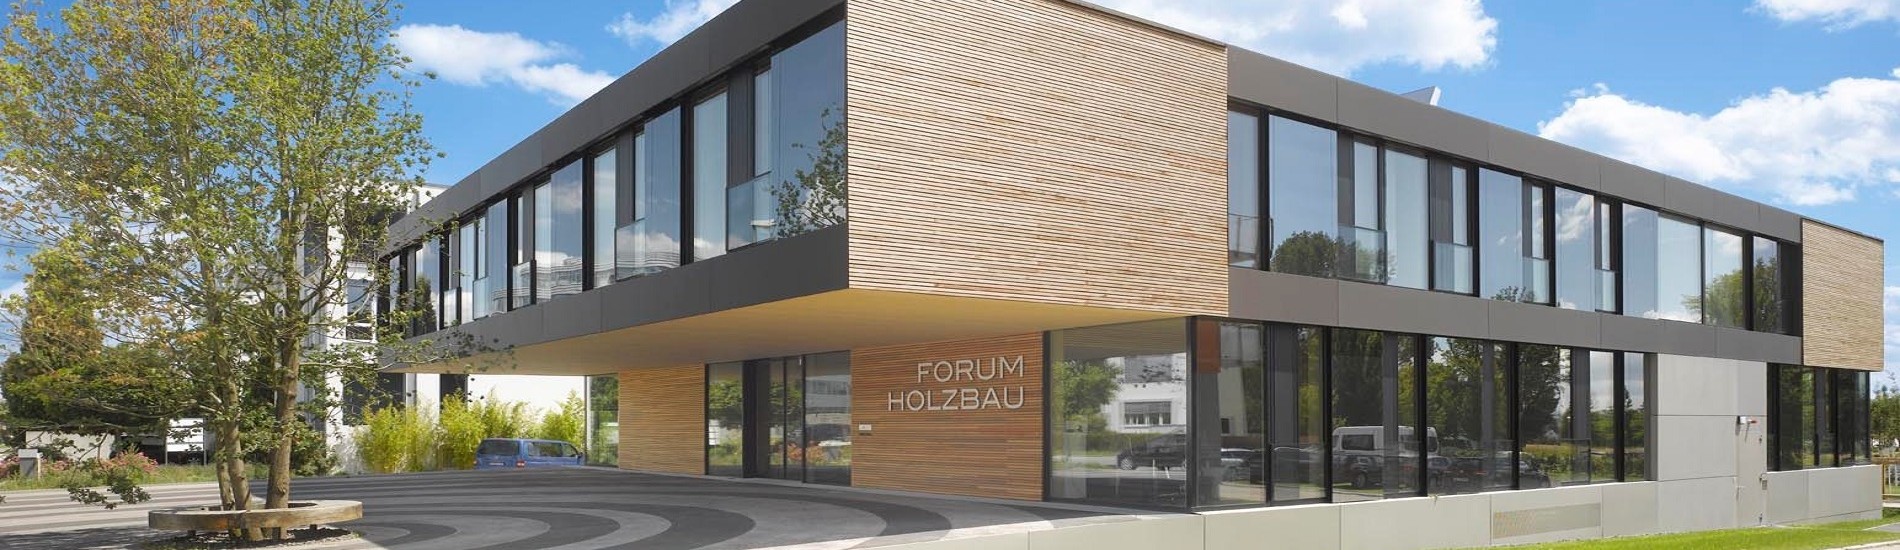 Forum Holzbau Ostfildern, Vorderansicht